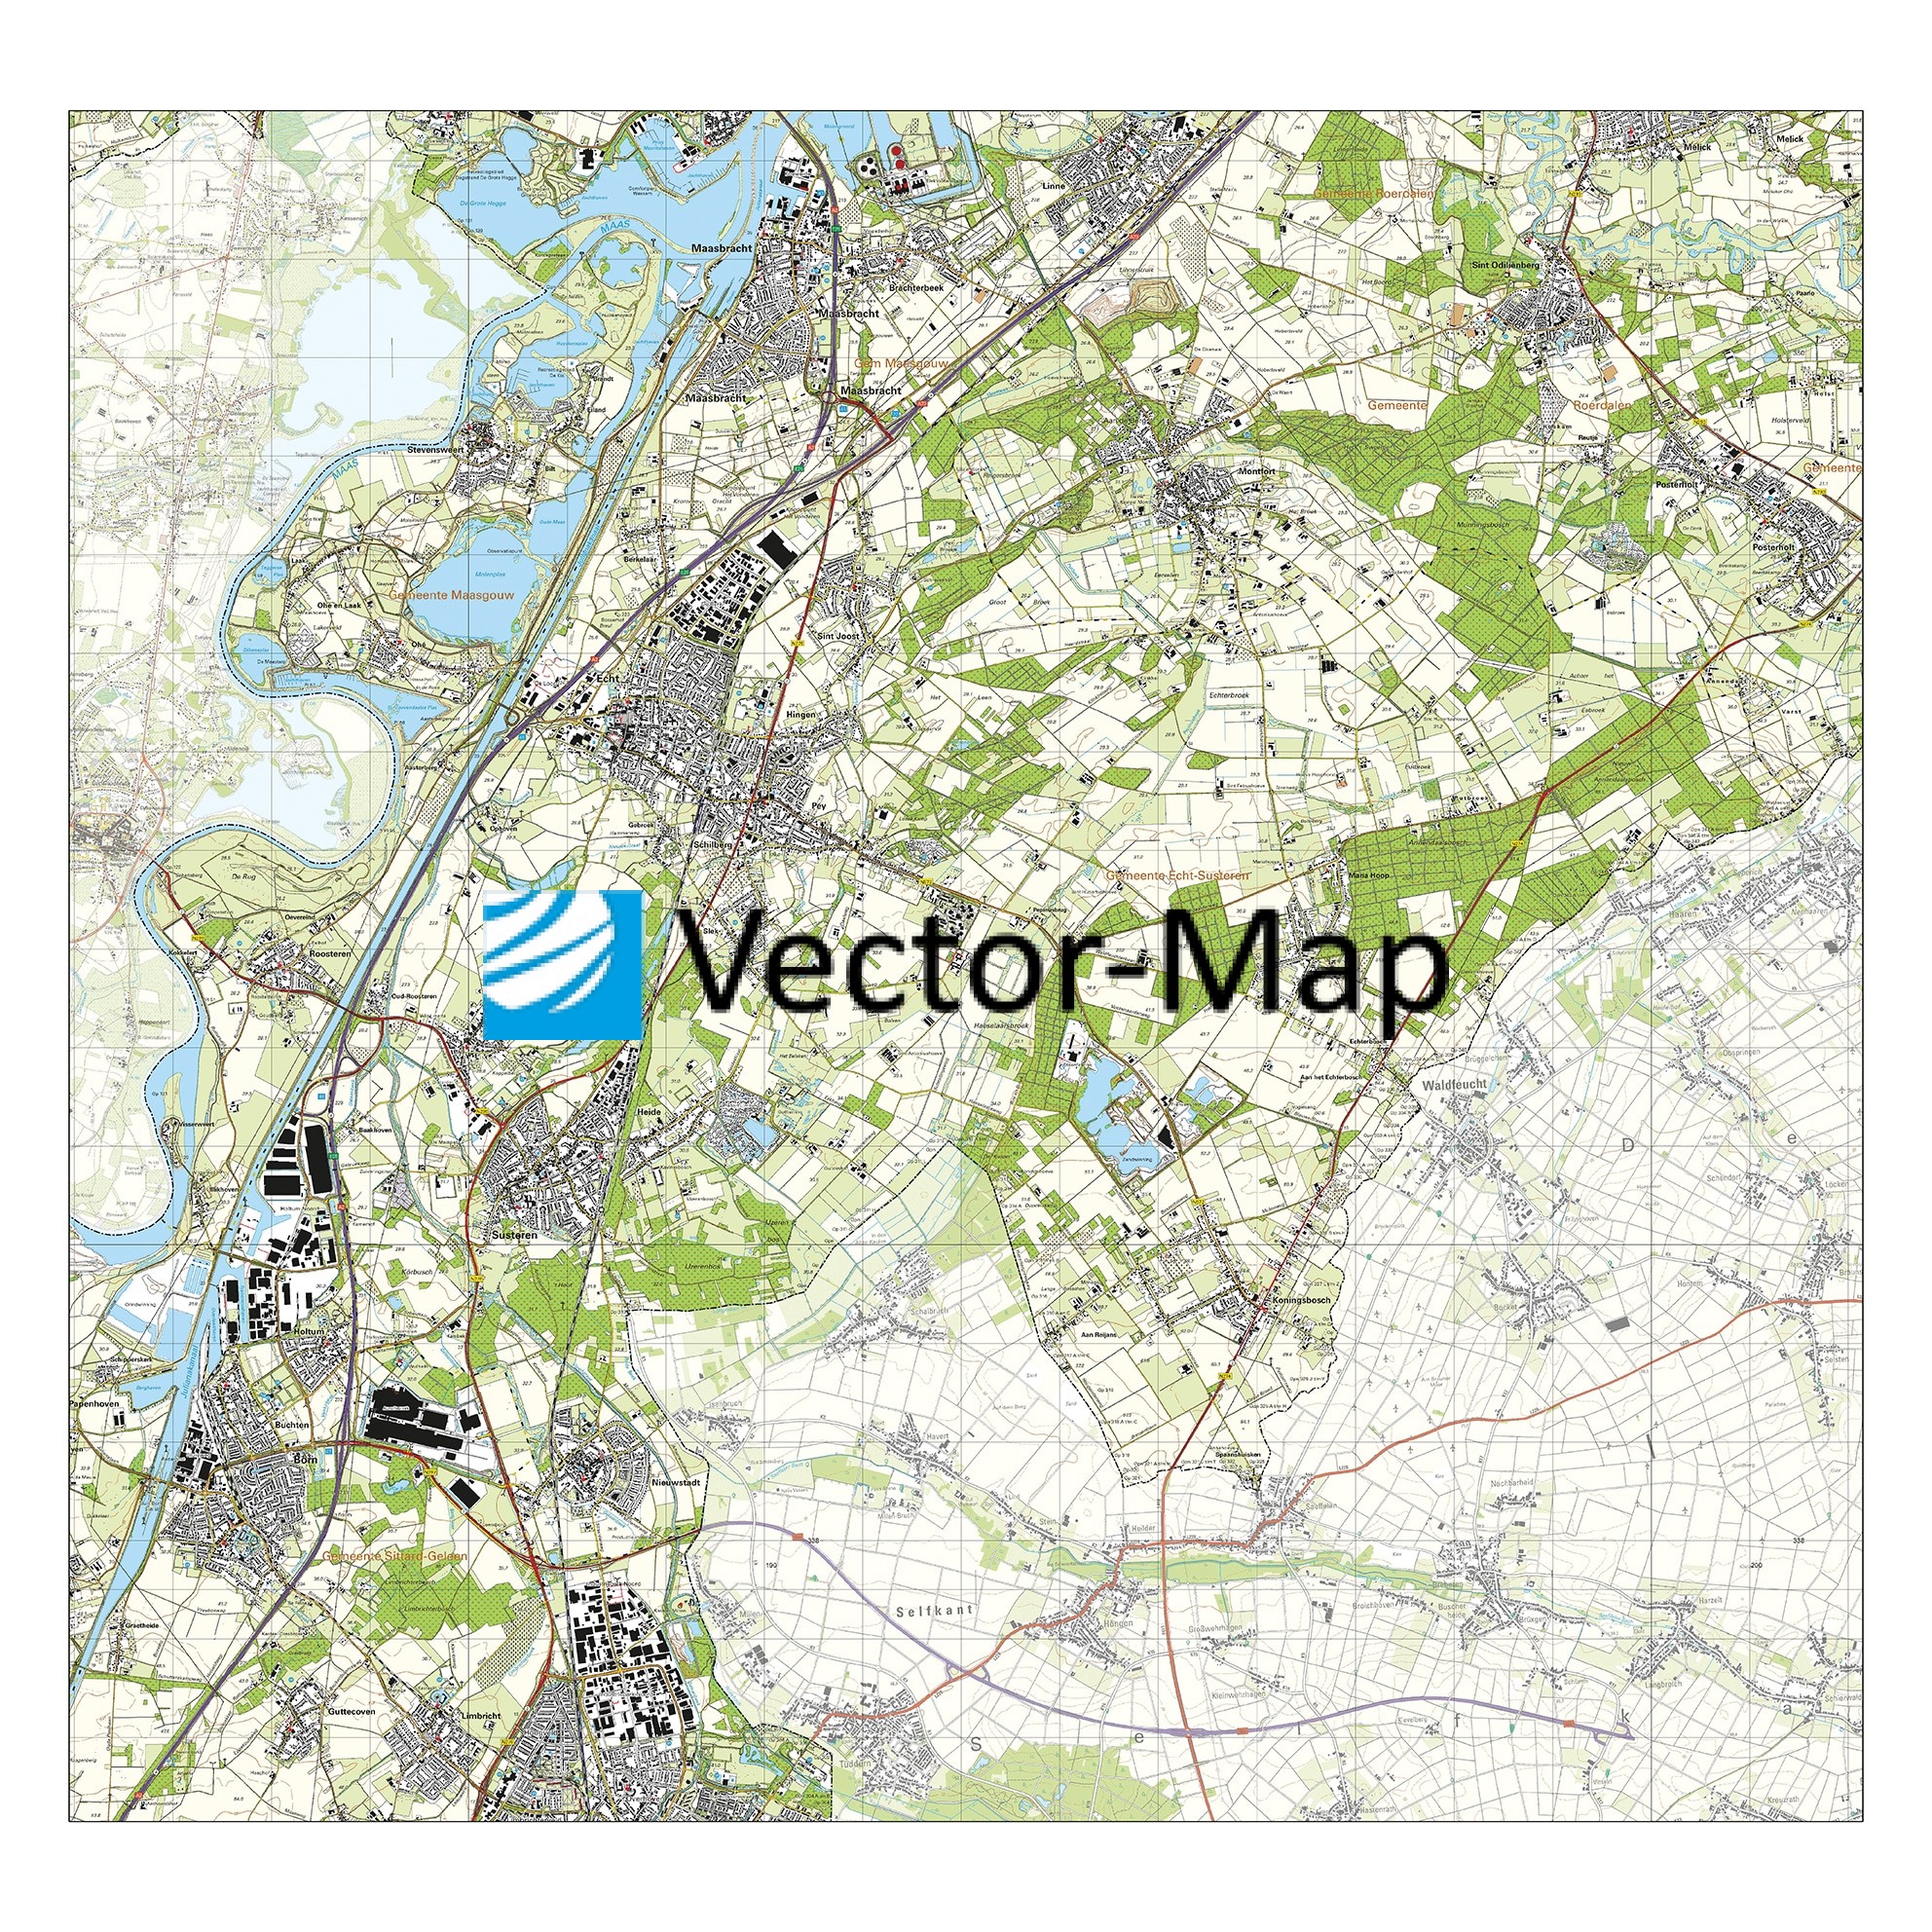 vertrekken Verbazingwekkend Snazzy Topografische kaart Echt-Susteren - Vector-Map de online kaarten shop!